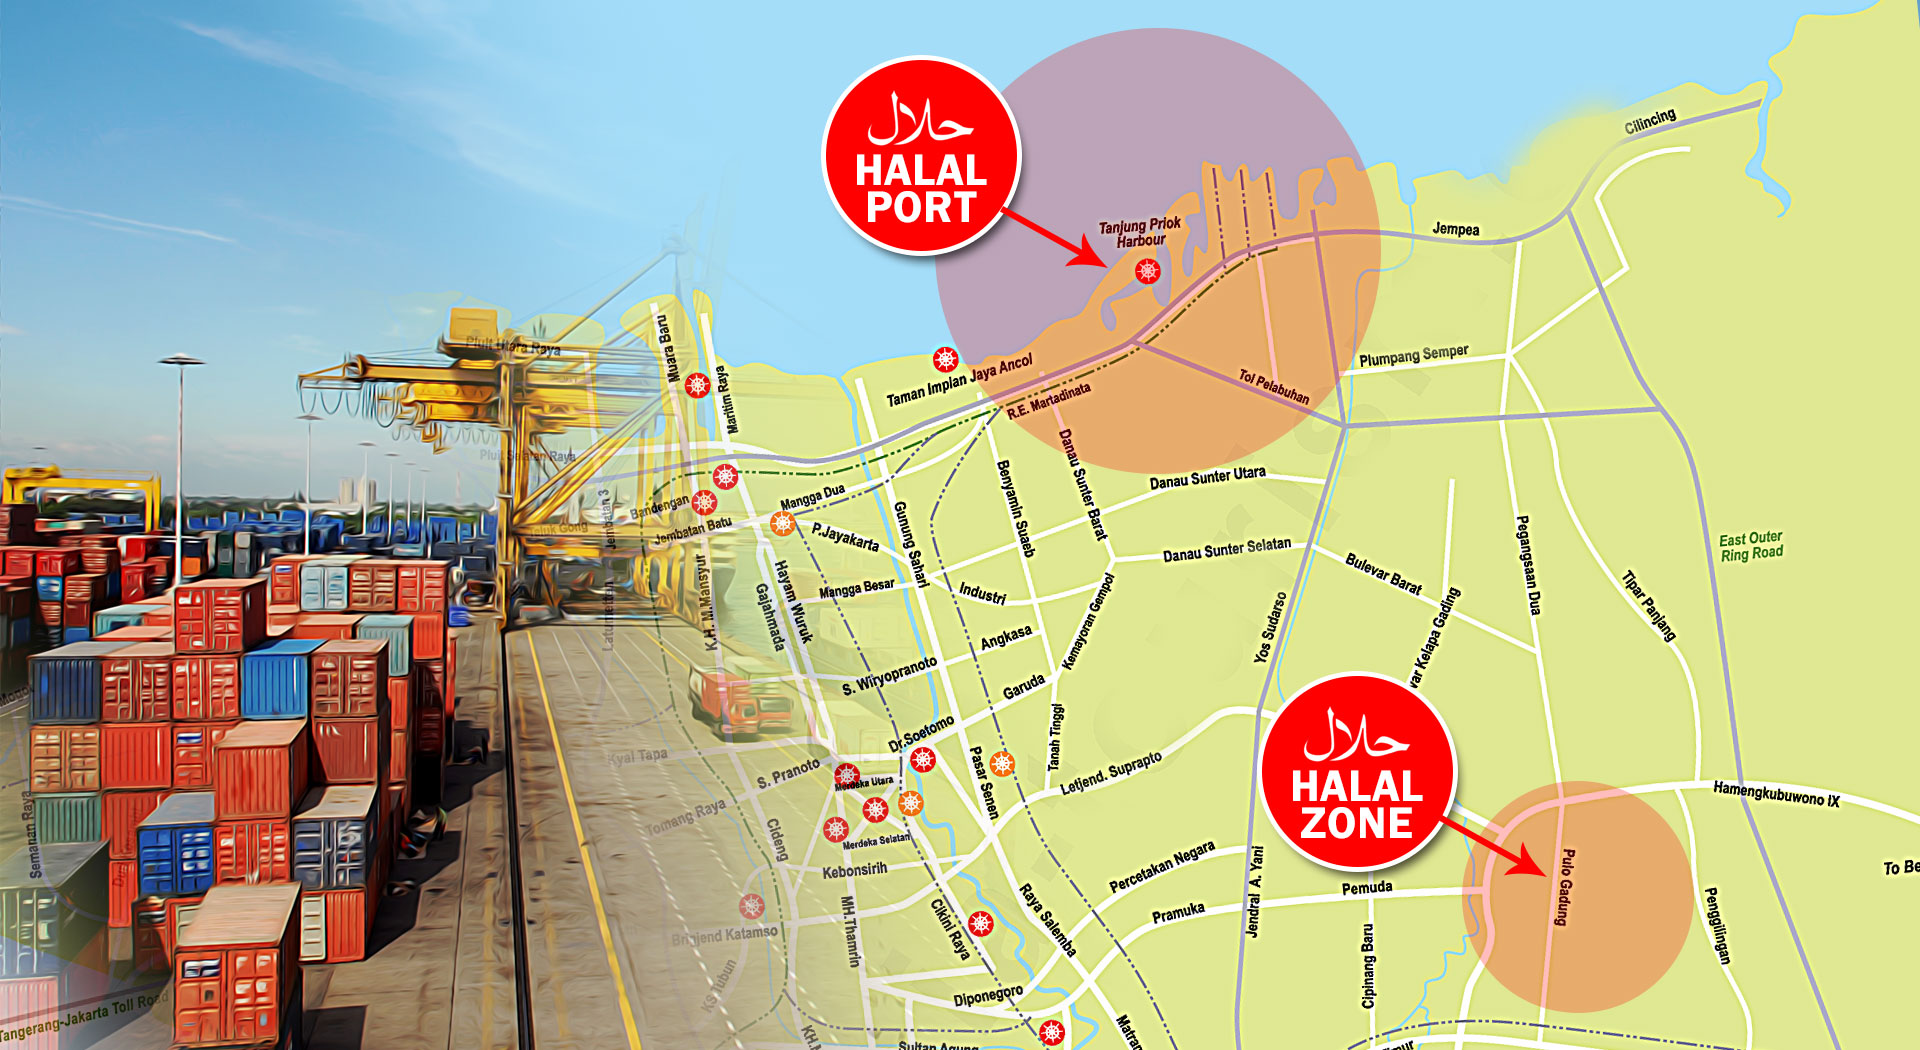 Rencana pembangunan Halal Port dan Halal Zone di Indonesia. (ilustrasi/aktual.com)